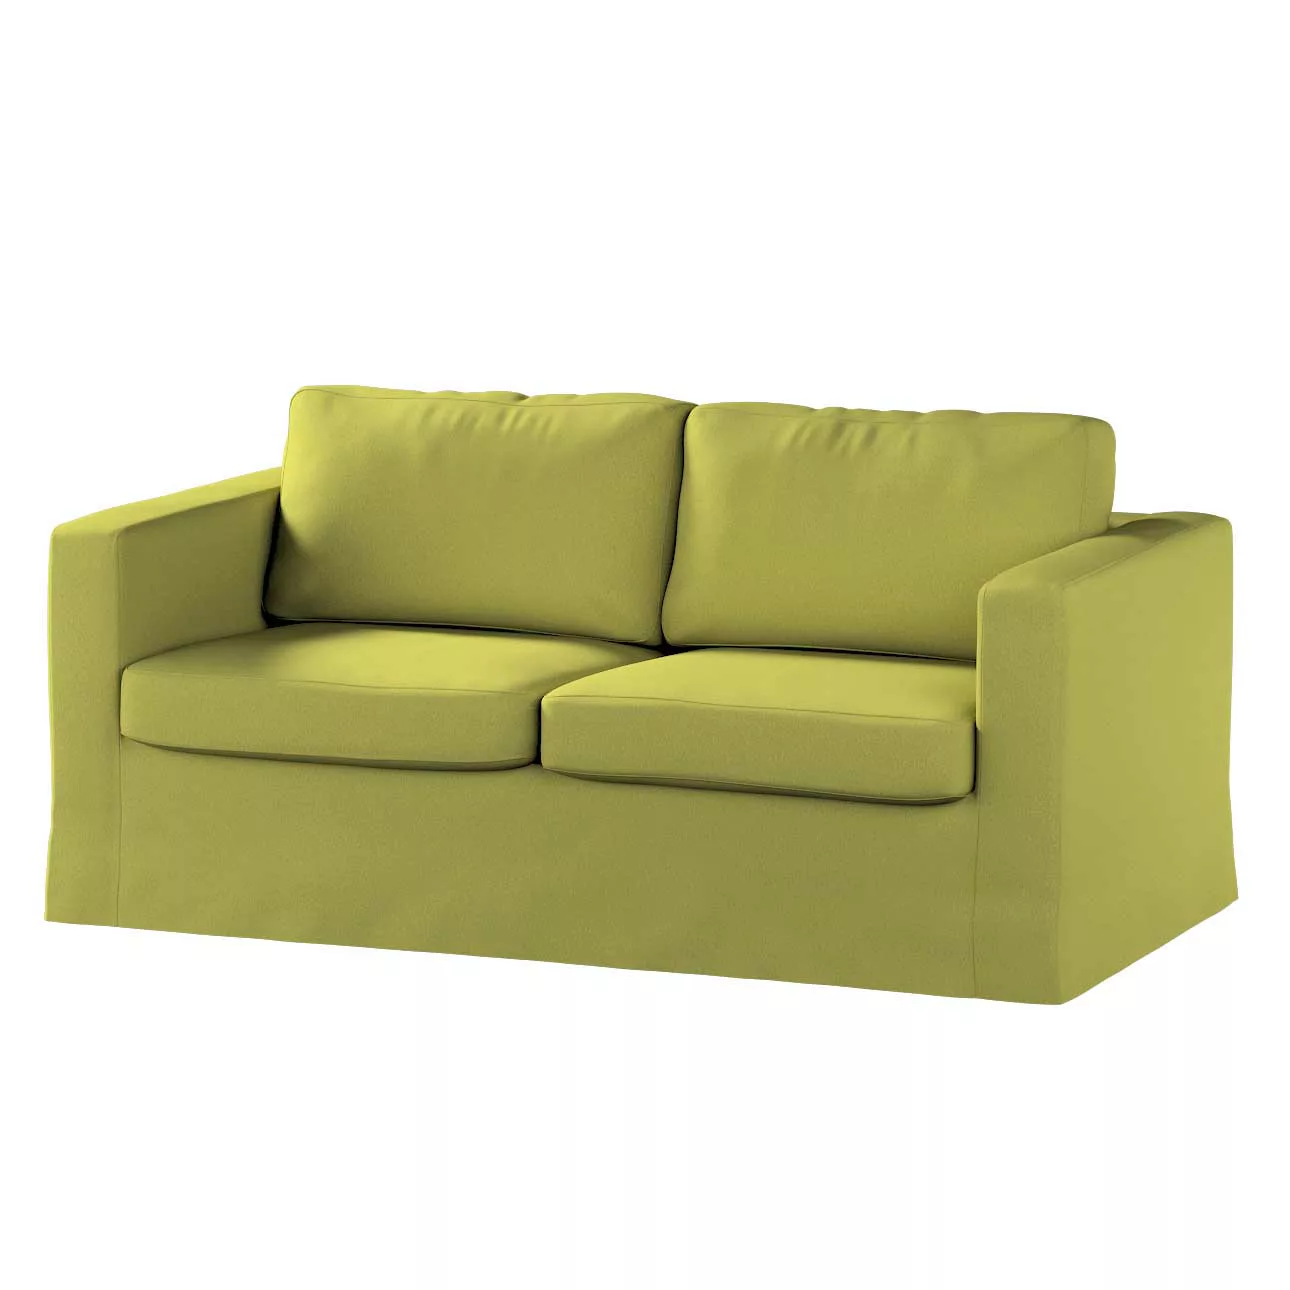 Bezug für Karlstad 2-Sitzer Sofa nicht ausklappbar, lang, limone, Sofahusse günstig online kaufen